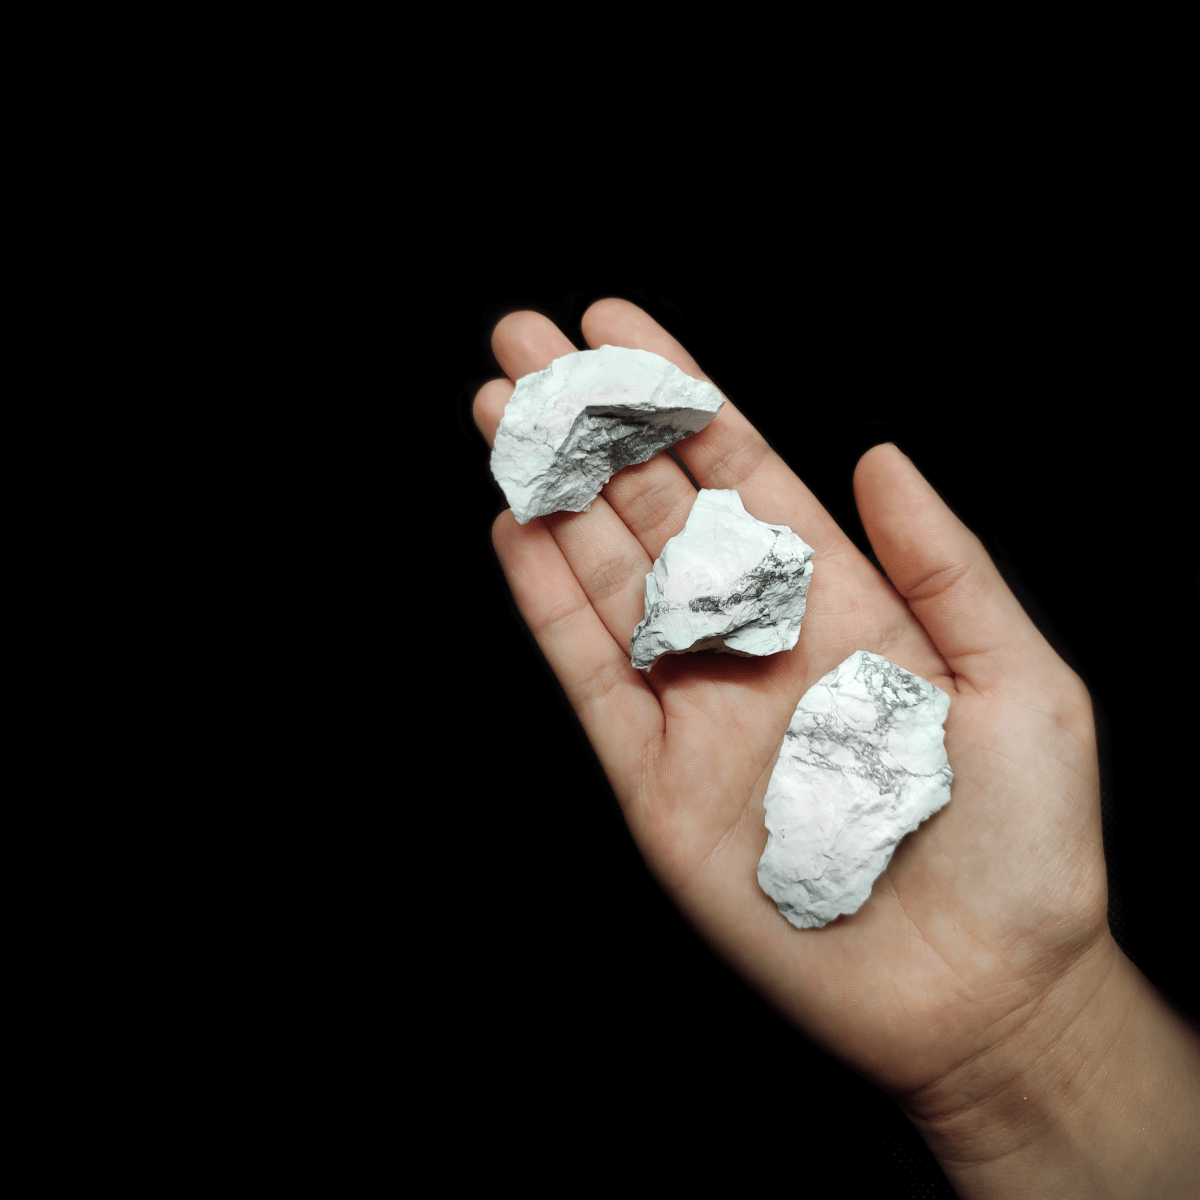 Produktpräsentation natürlicher weißer Magnesit Rohsteine, welchem zum Größen Vergleich auf einer Handfläche liegen.